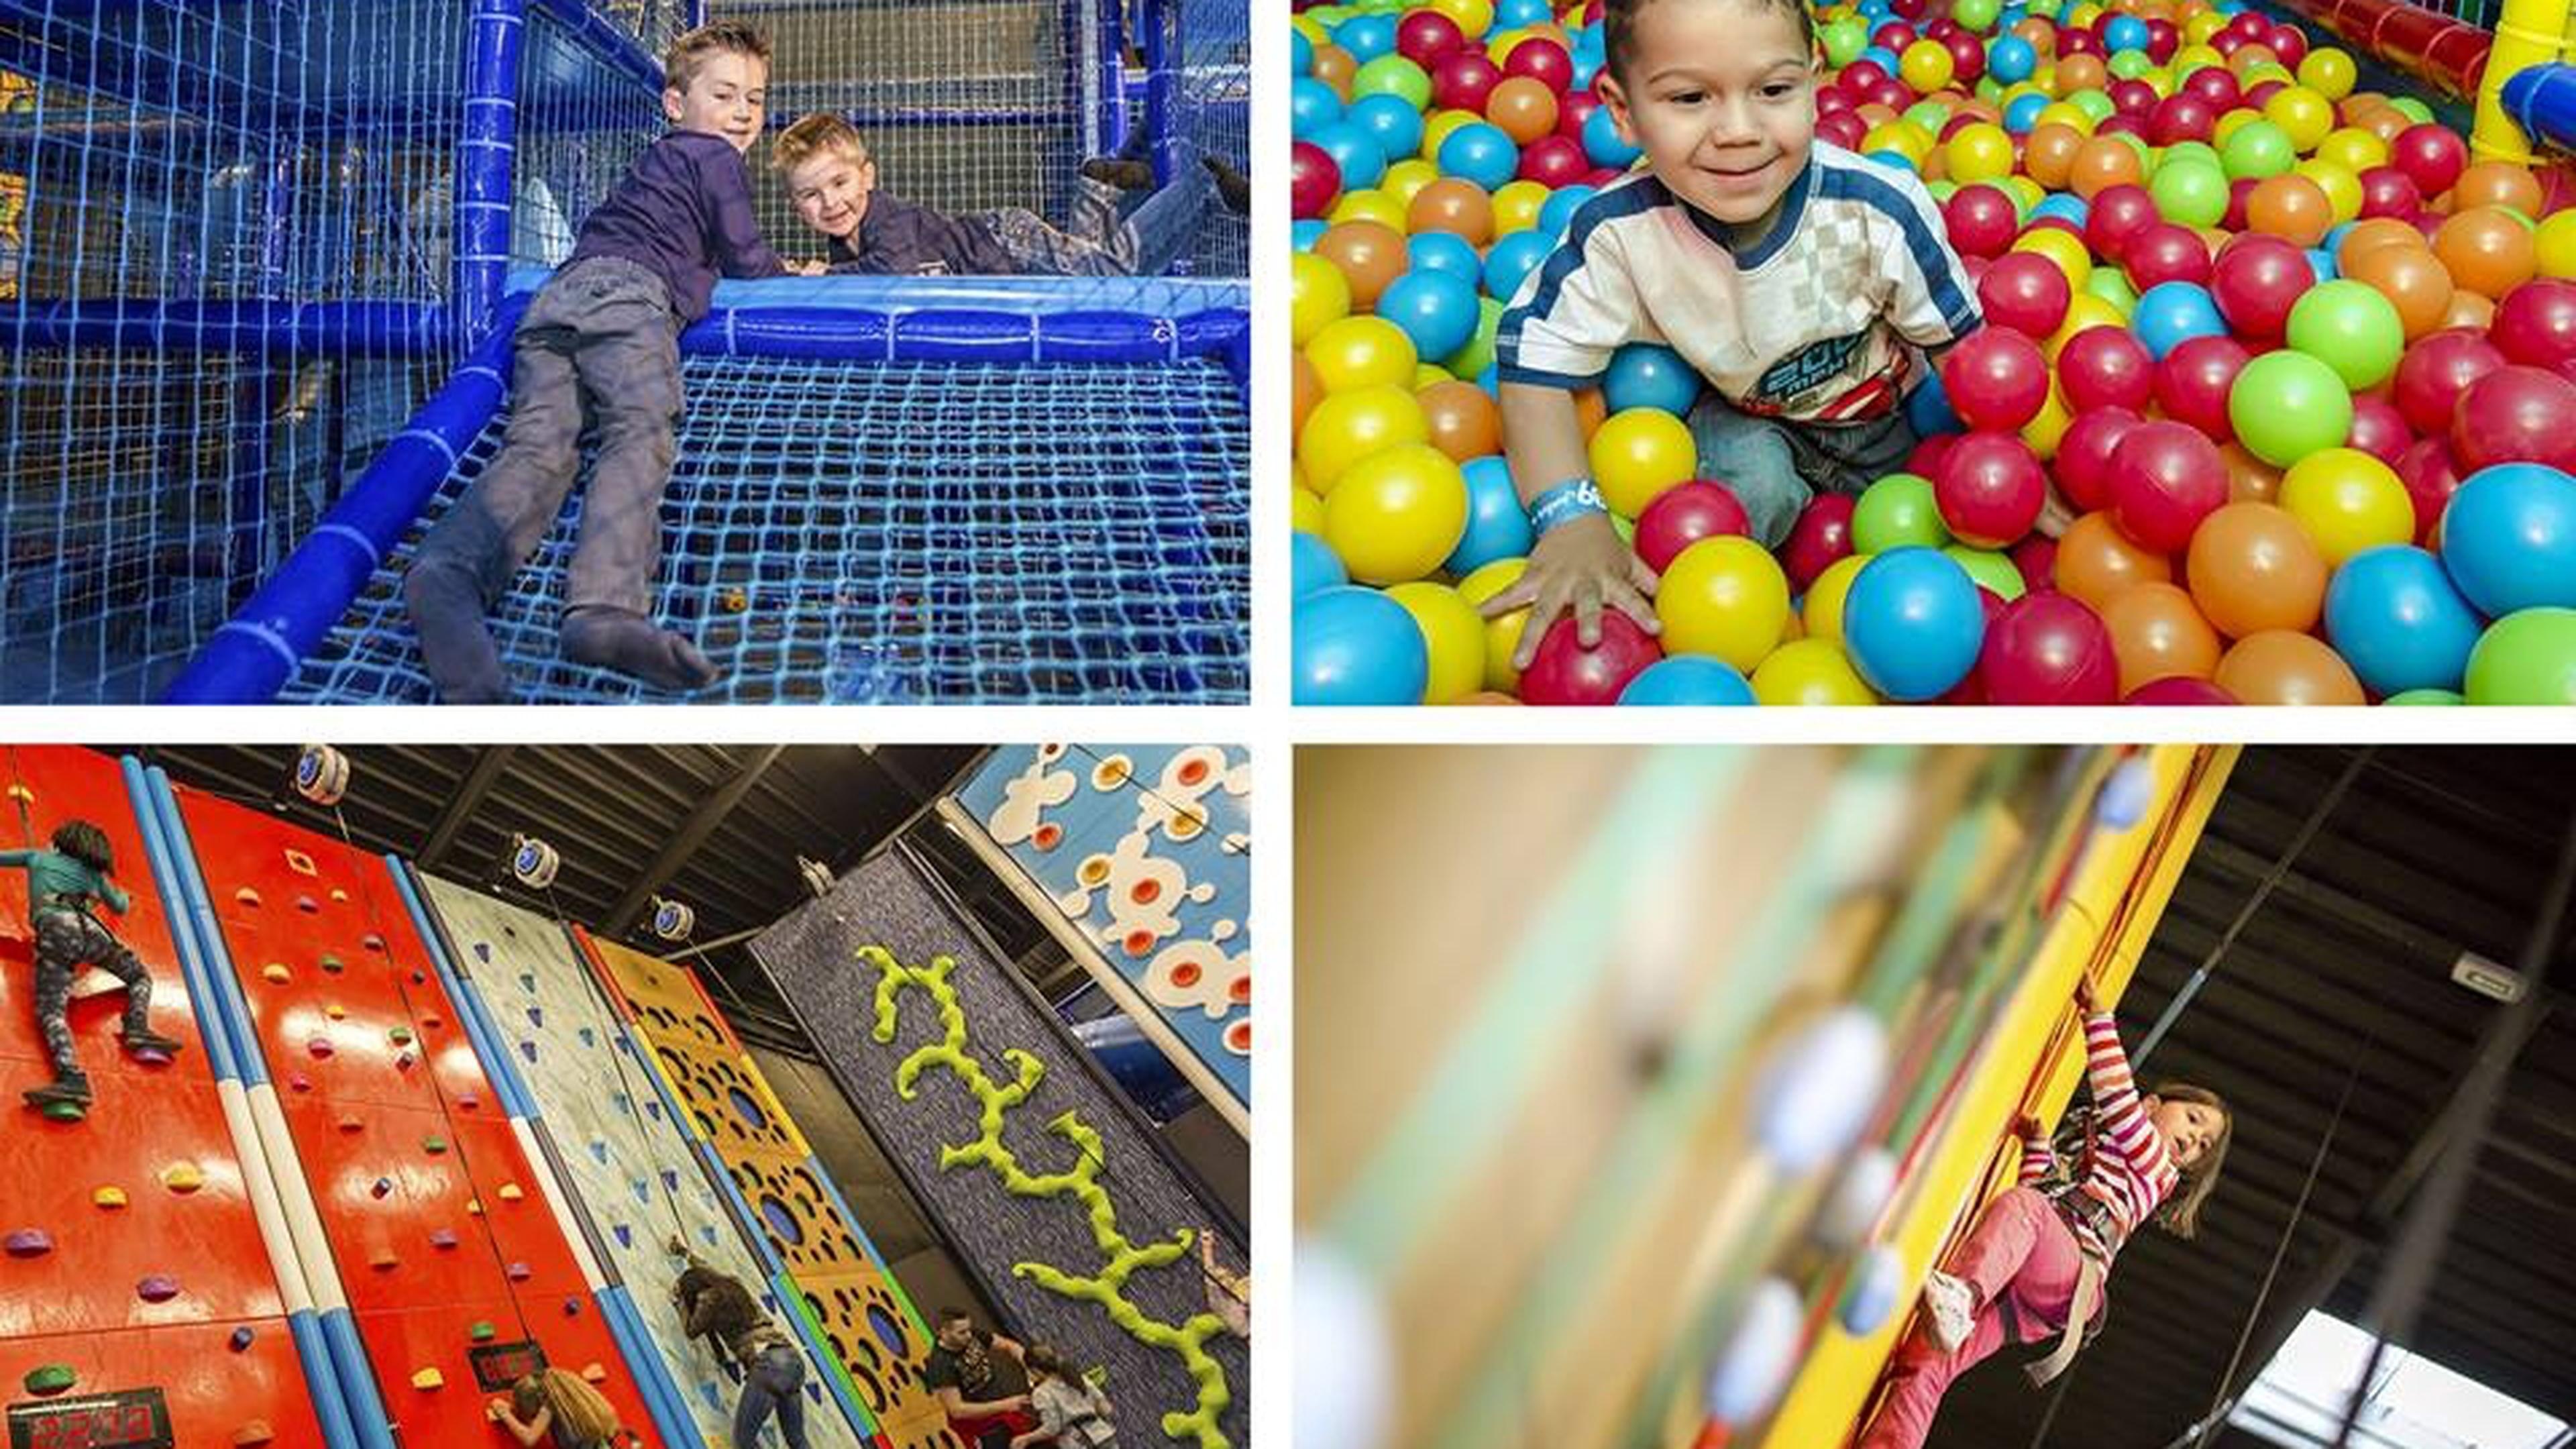 Premier parc indoor avec piscine à boules pour adultes en Alsace